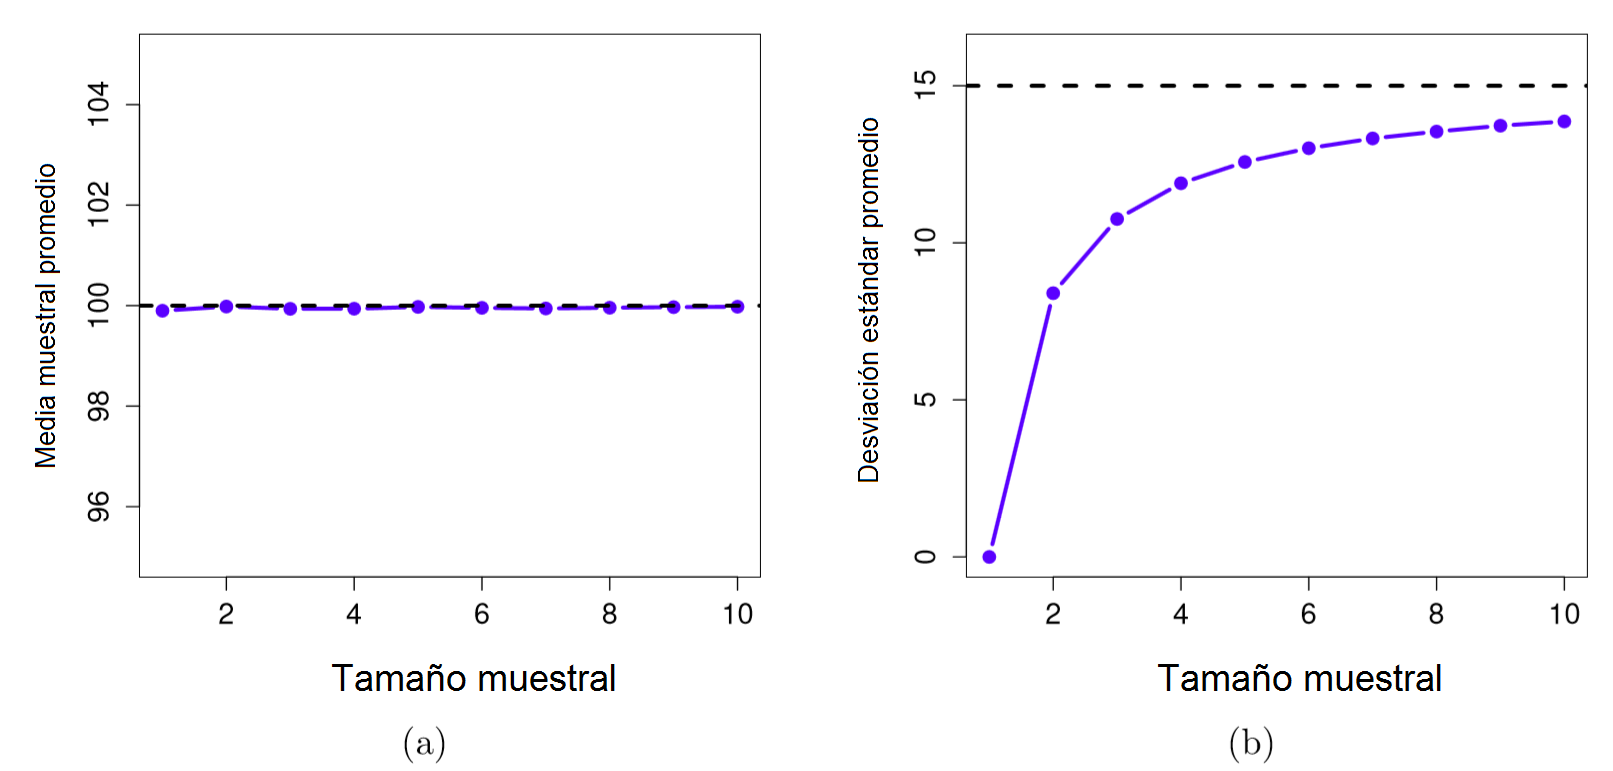 Demostración del hecho de que la media muestral es un estimador insesgado de la media poblacional (a), mientras que la desviación estándar es un estimador sesgado de la desviación estándar poblacional (b). *En promedio*, la media muestral es 100, independientemente del tamaño muestral (a). Sin embargo, la desviación estándar muestral es sistemáticamente menor que la desviación estándar poblacional (b), sobre todo con tamaños de muestra pequeños.